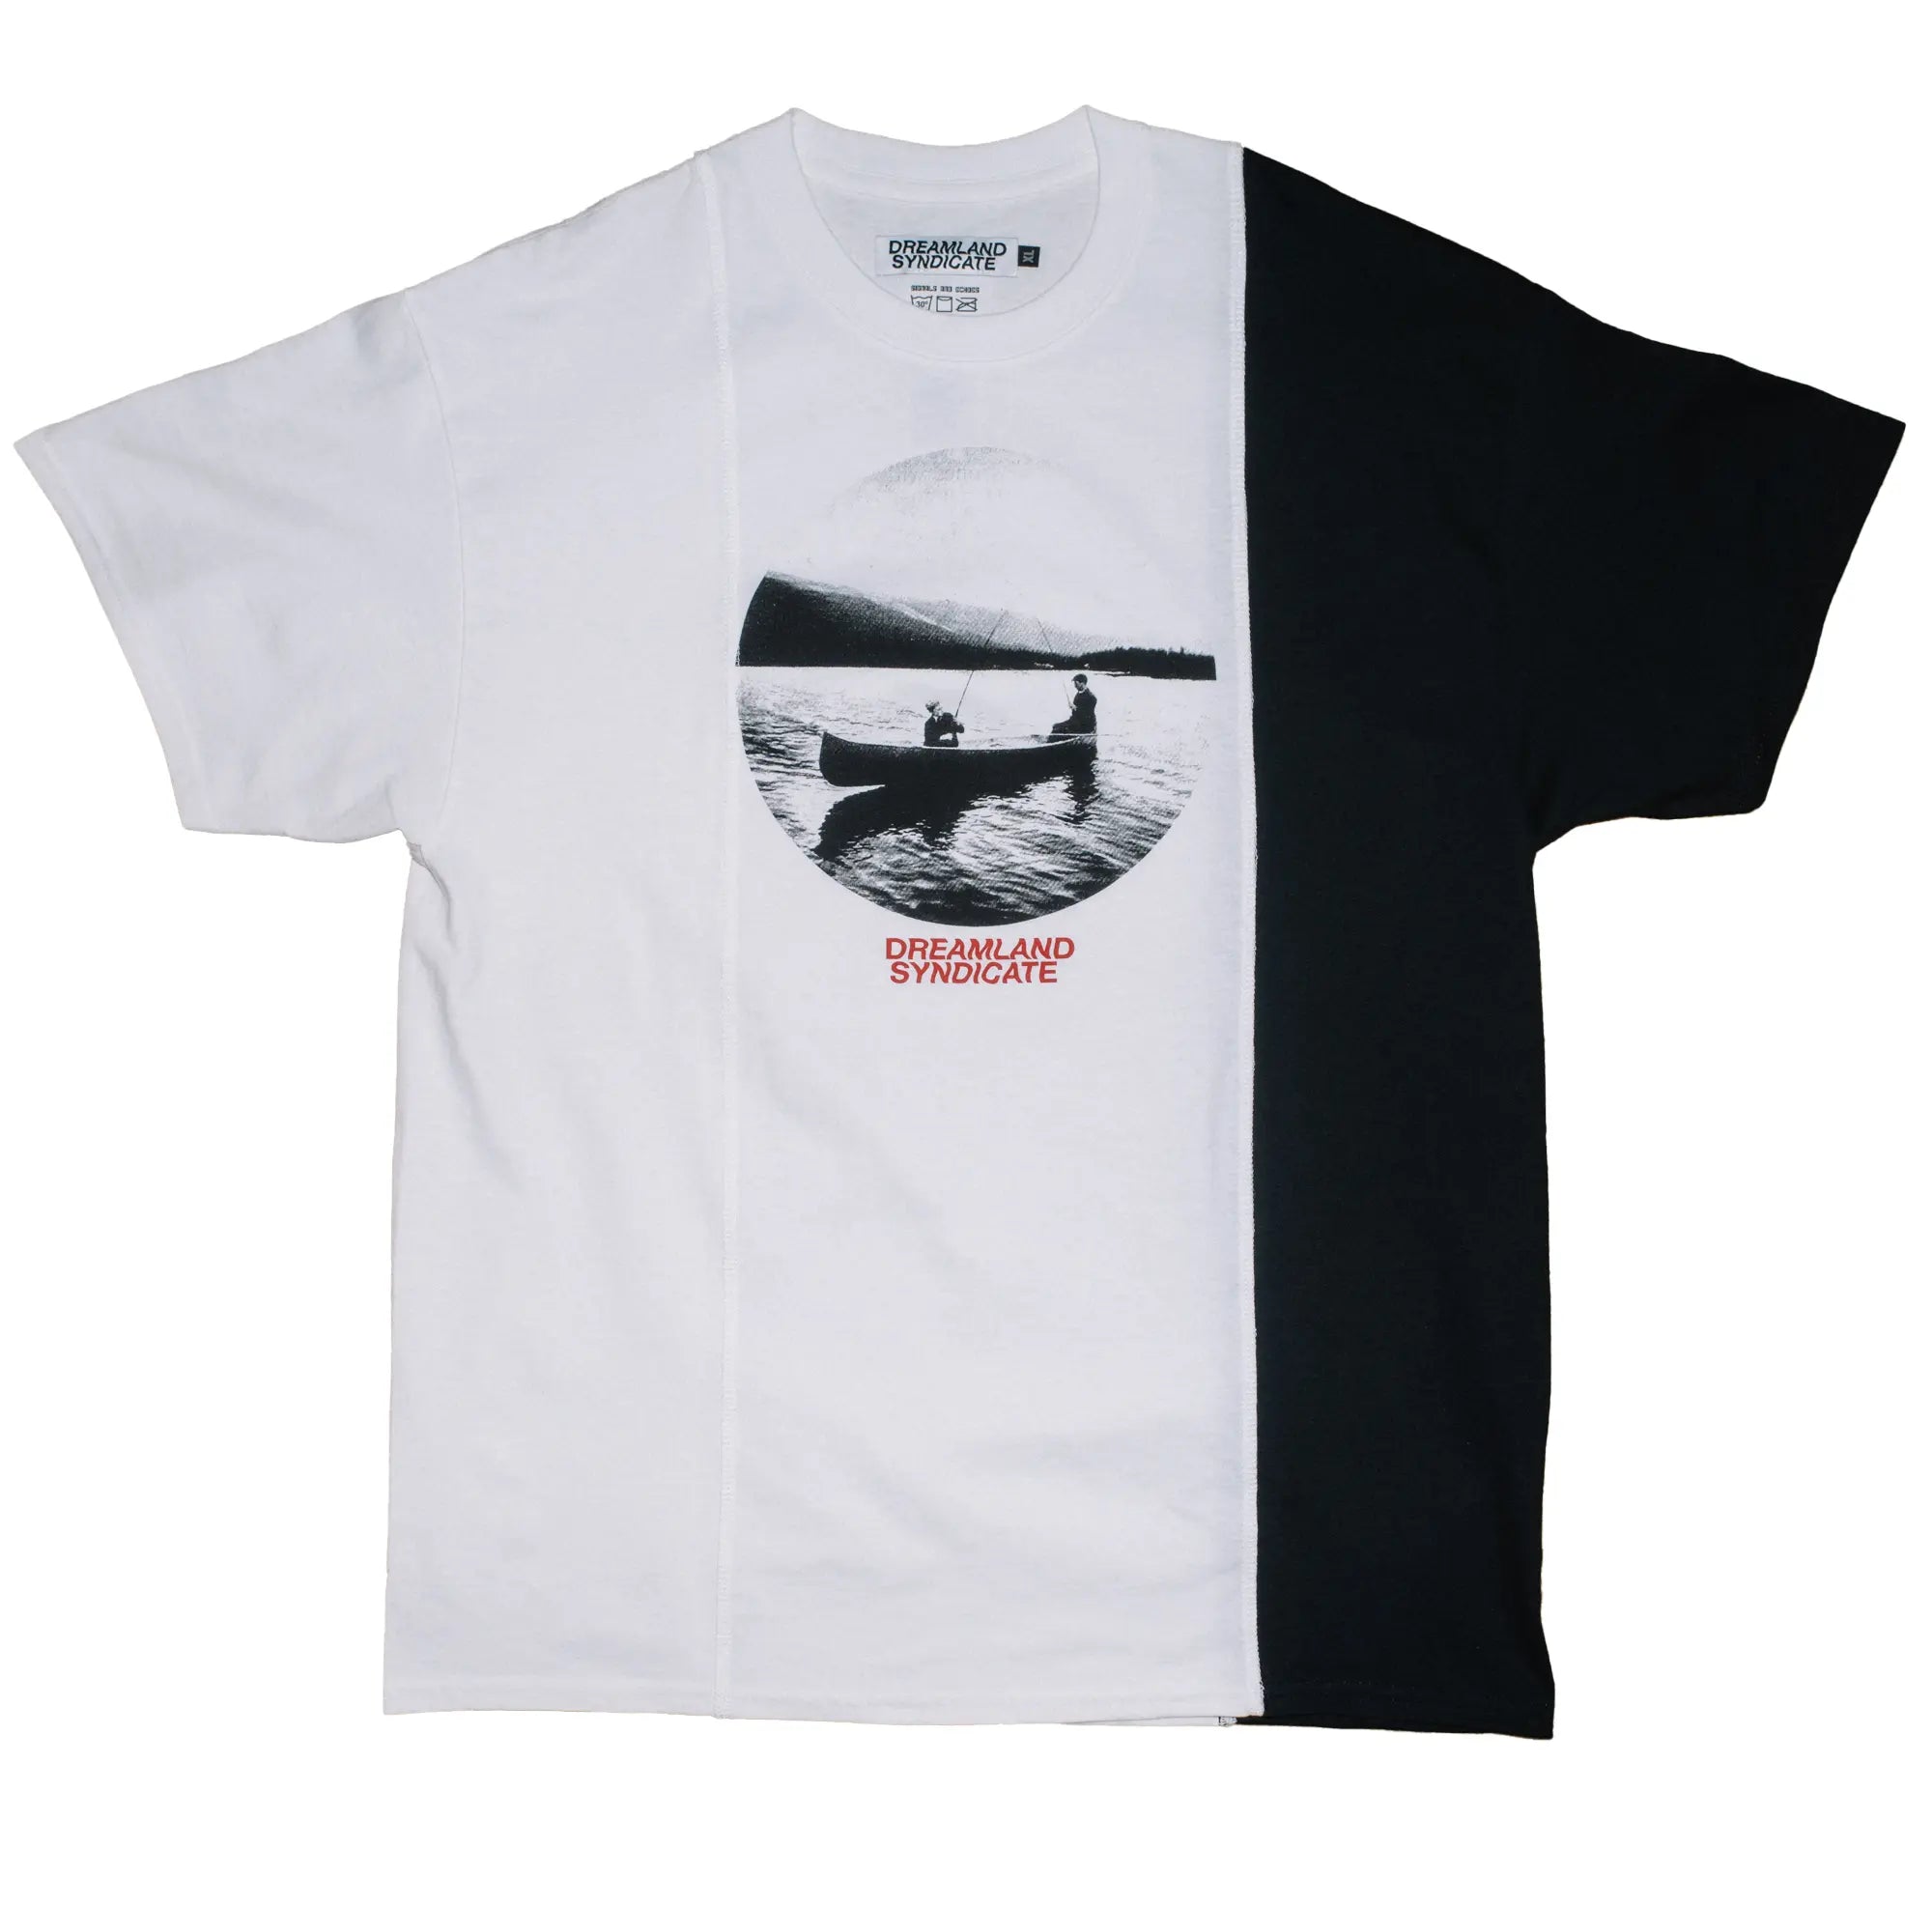 CUT-UP T-shirt no. 2313 - XL